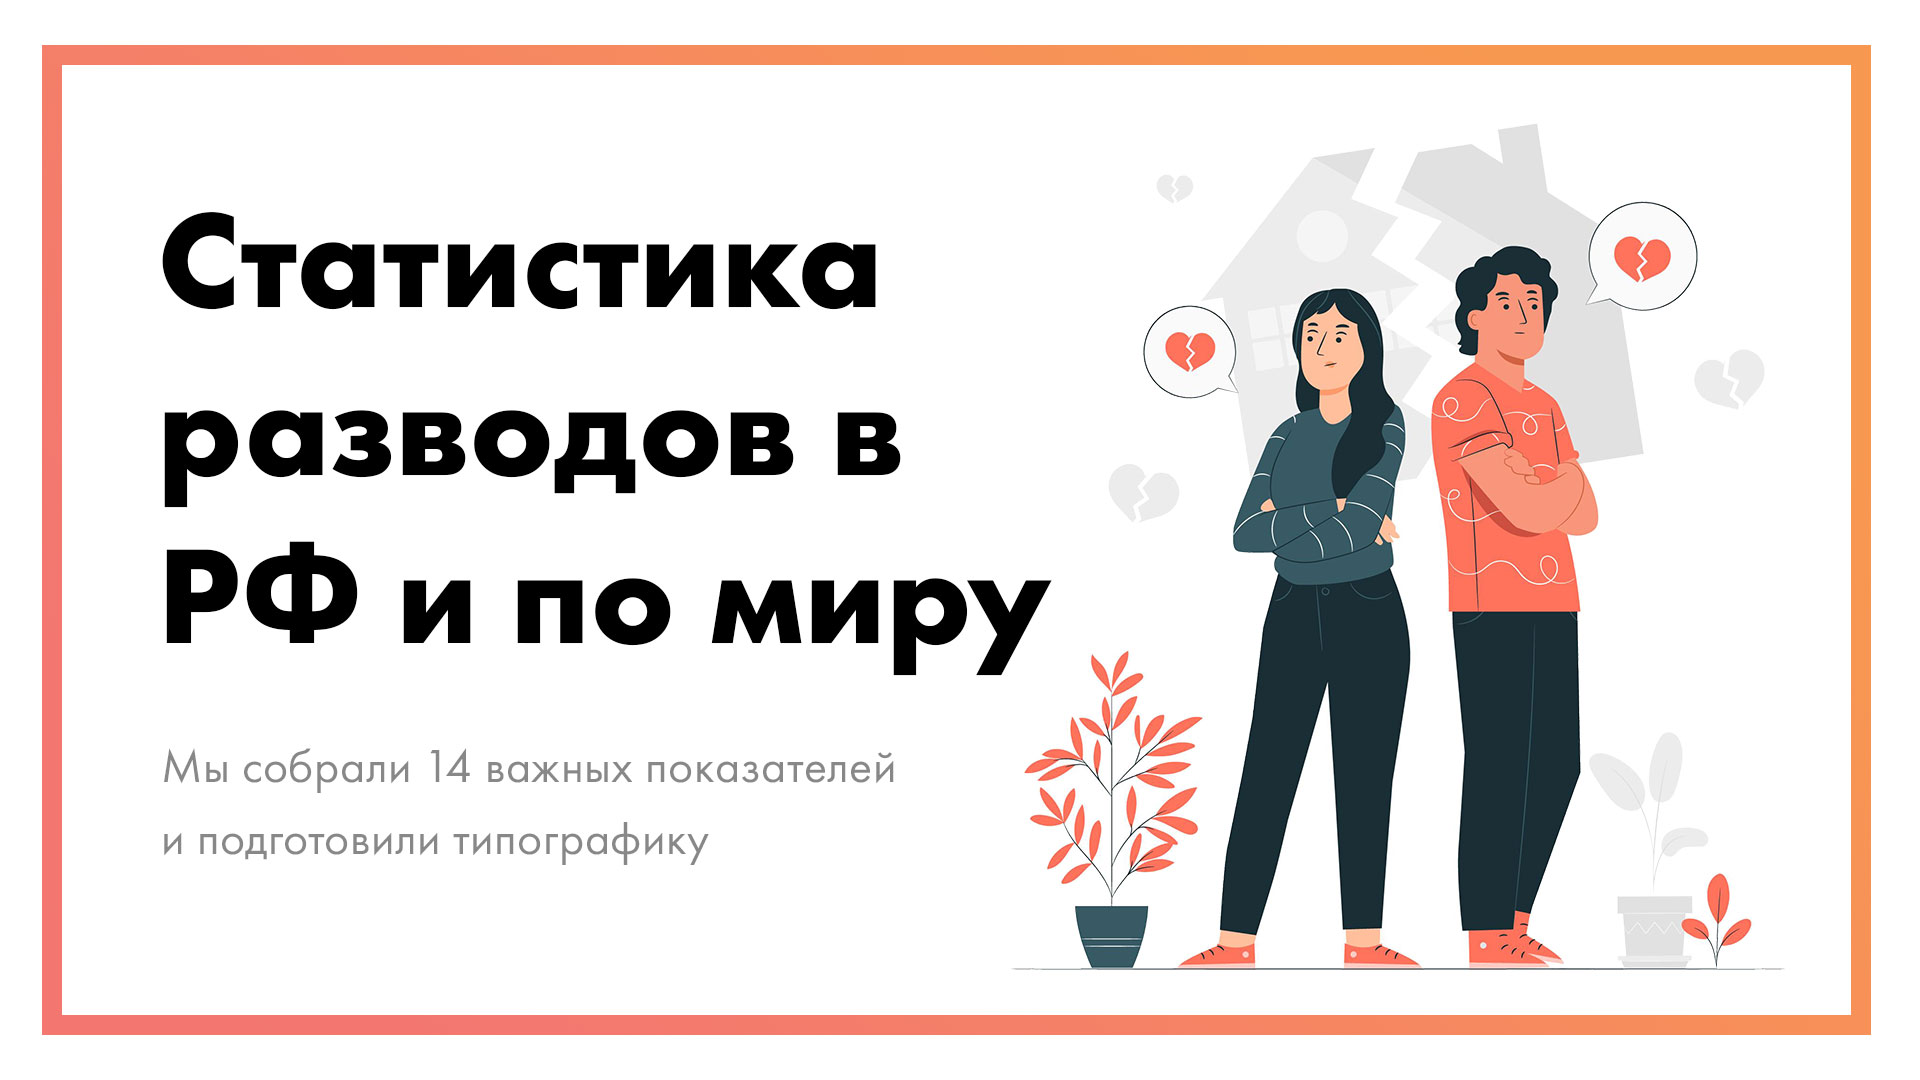 Статистика-разводов-в-России-и-мире-_-14-показателей-+-типографика-постер.jpg